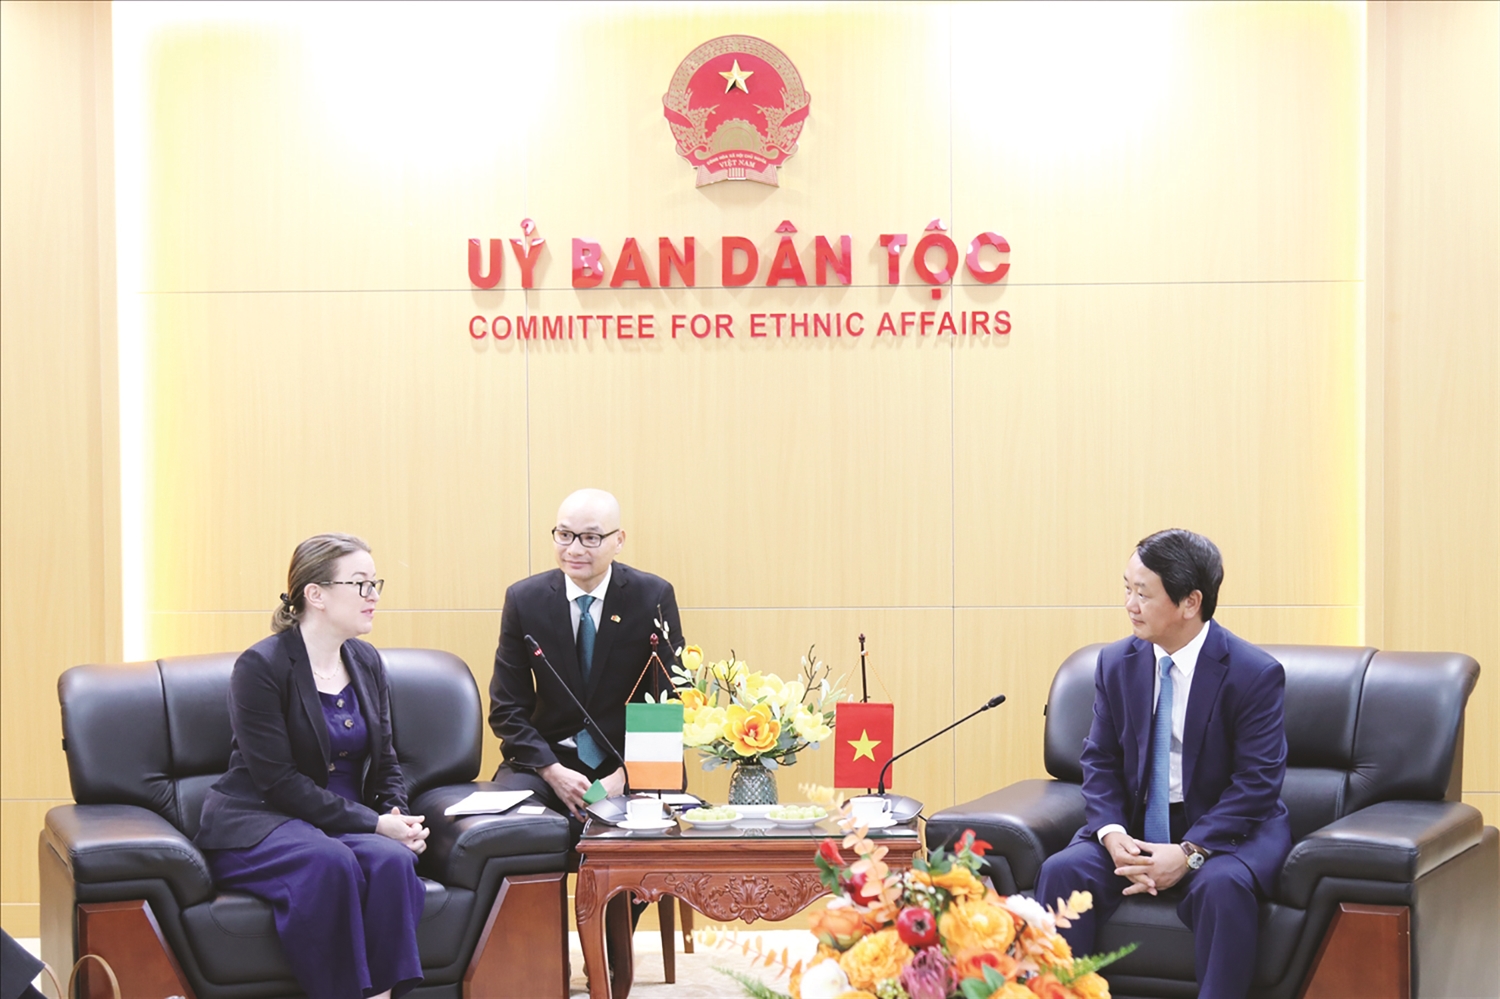 Bộ trưởng, Chủ nhiệm Ủy ban Dân tộc Hầu A Lềnh tiếp xã giao Đại sứ đặc mệnh toàn quyền Ai-Len tại Việt Nam